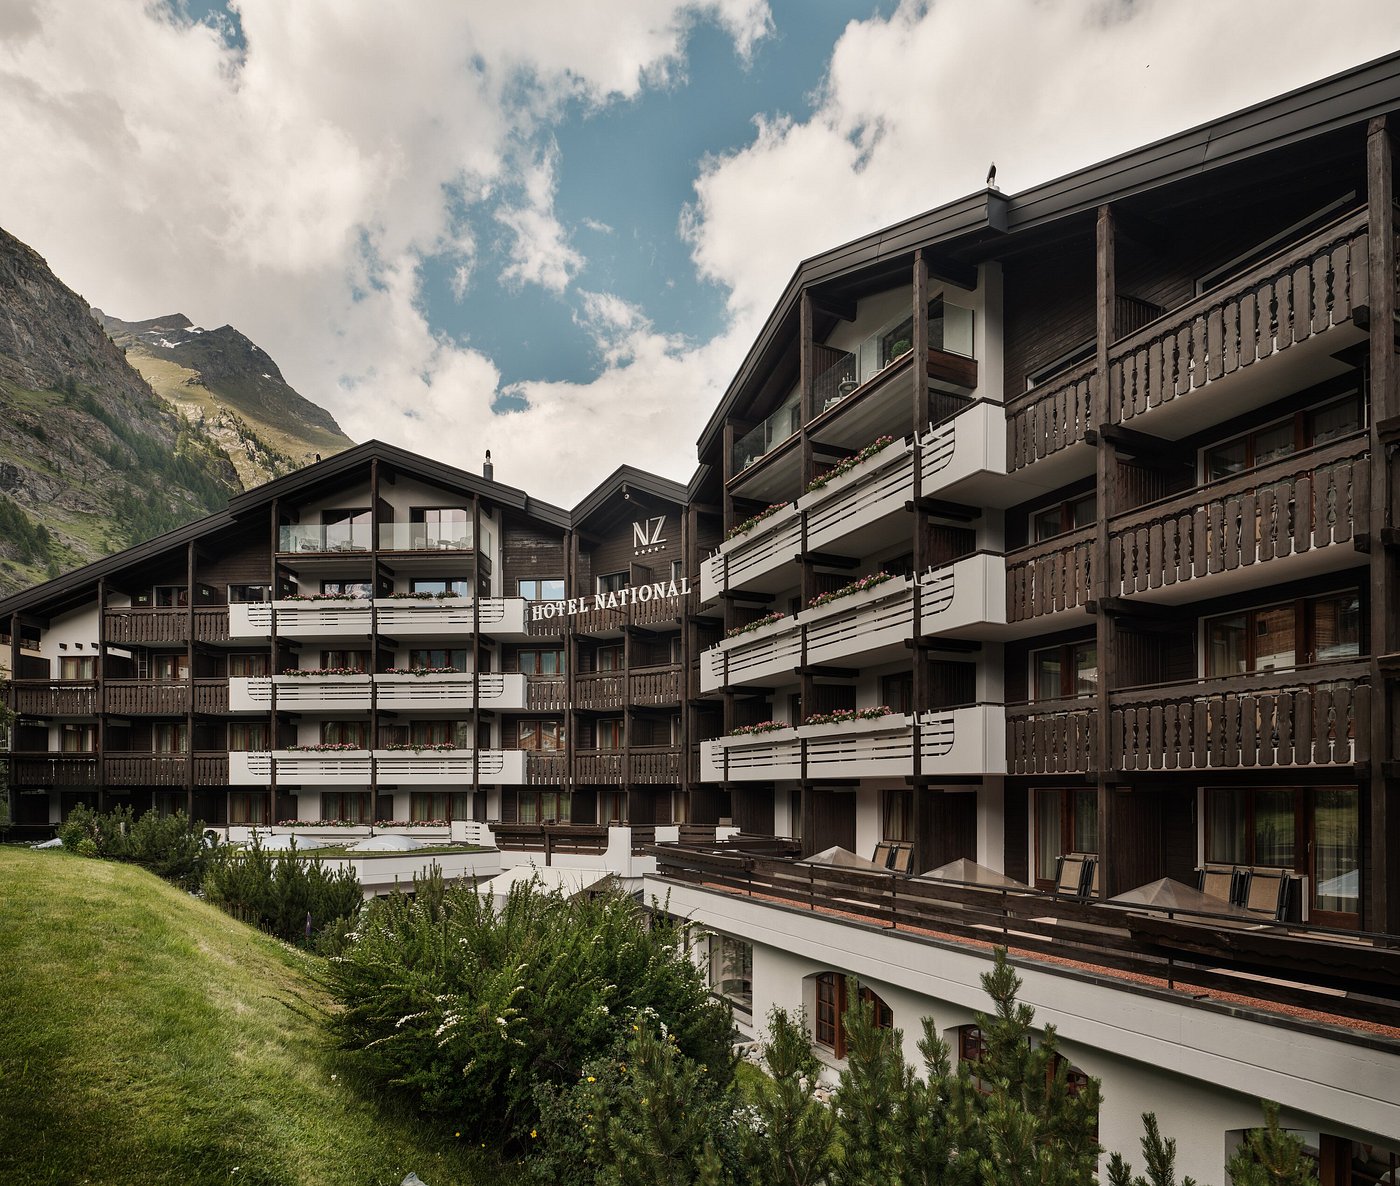 Hotel National Zermatt ?w=1400&h= 1&s=1